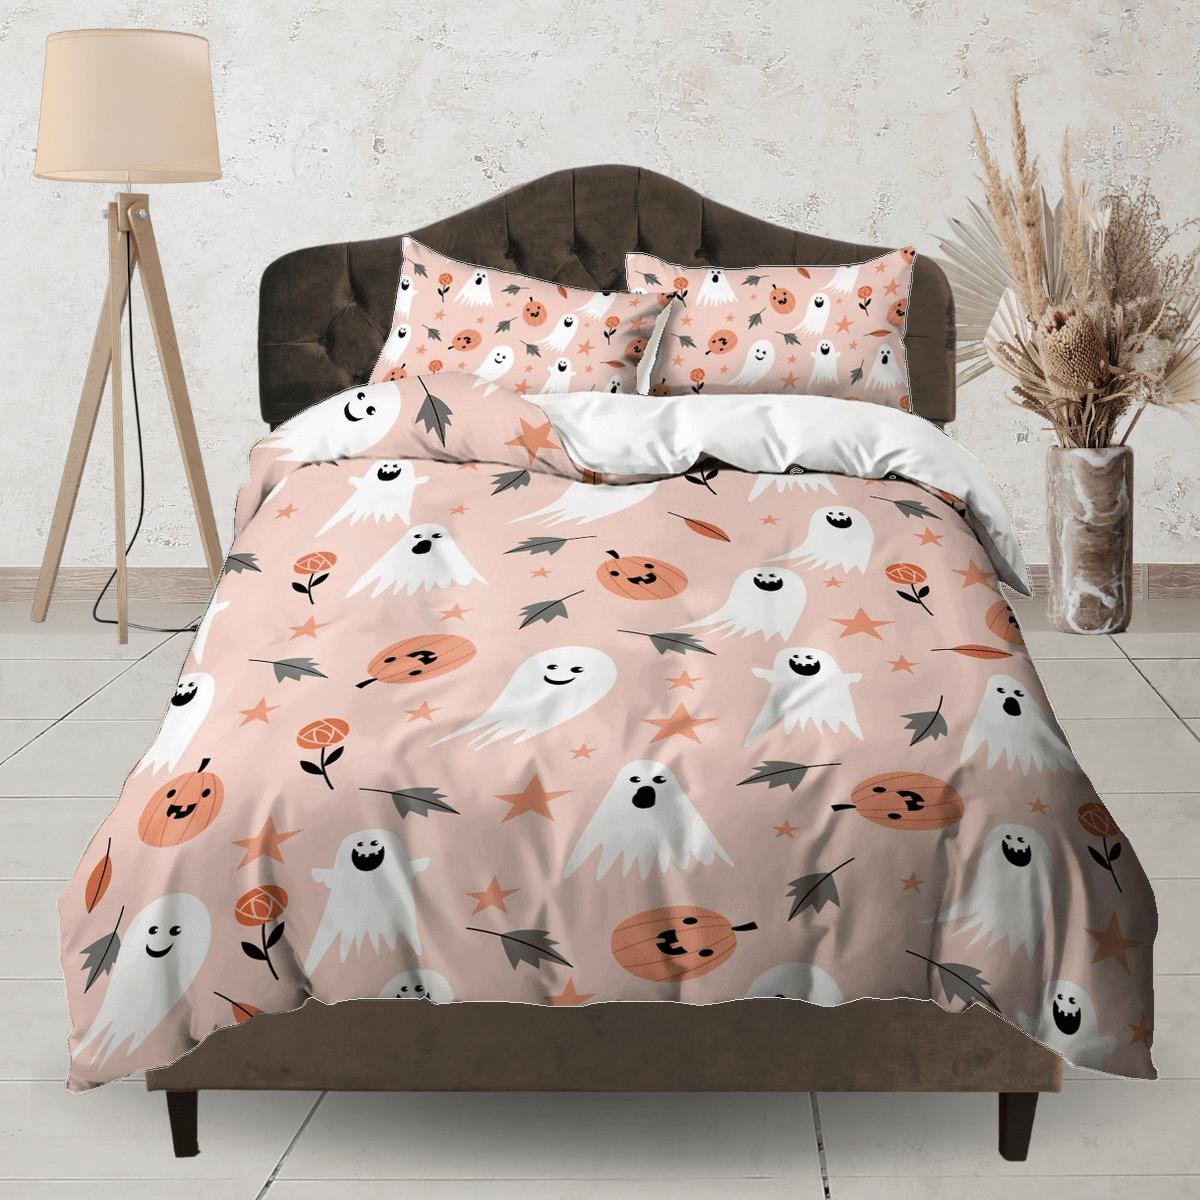 daintyduvet Cute halloween bedding & pillowcase, ghost pumpkin duvet cover set dorm bedding, halloween decor, nursery toddler bedding, halloween gift